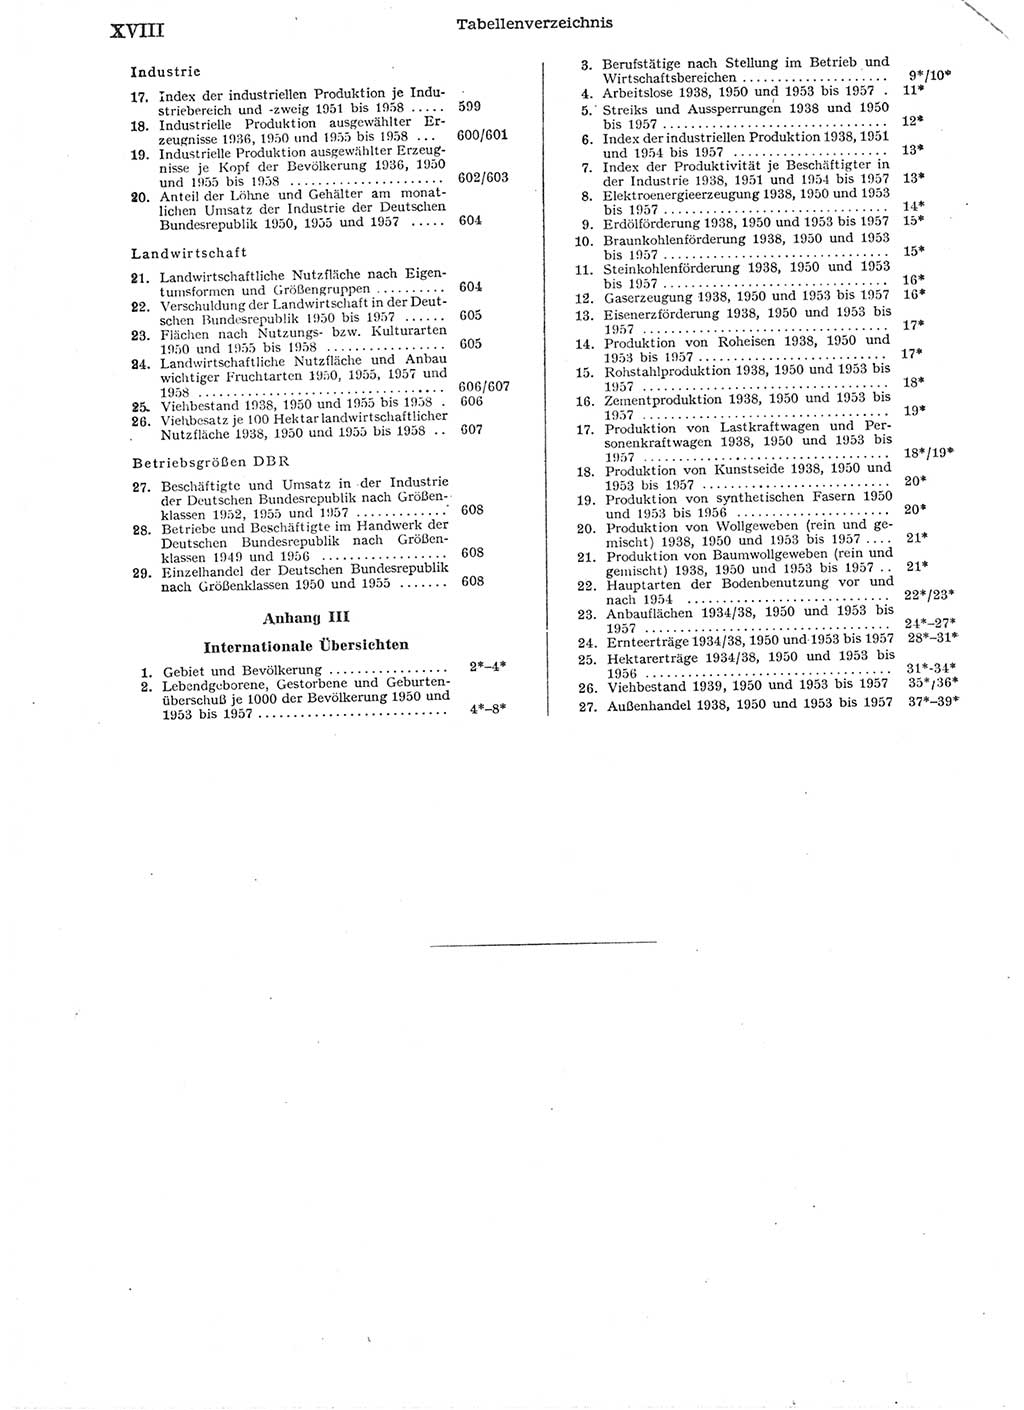 Statistisches Jahrbuch der Deutschen Demokratischen Republik (DDR) 1958, Seite 18 (Stat. Jb. DDR 1958, S. 18)